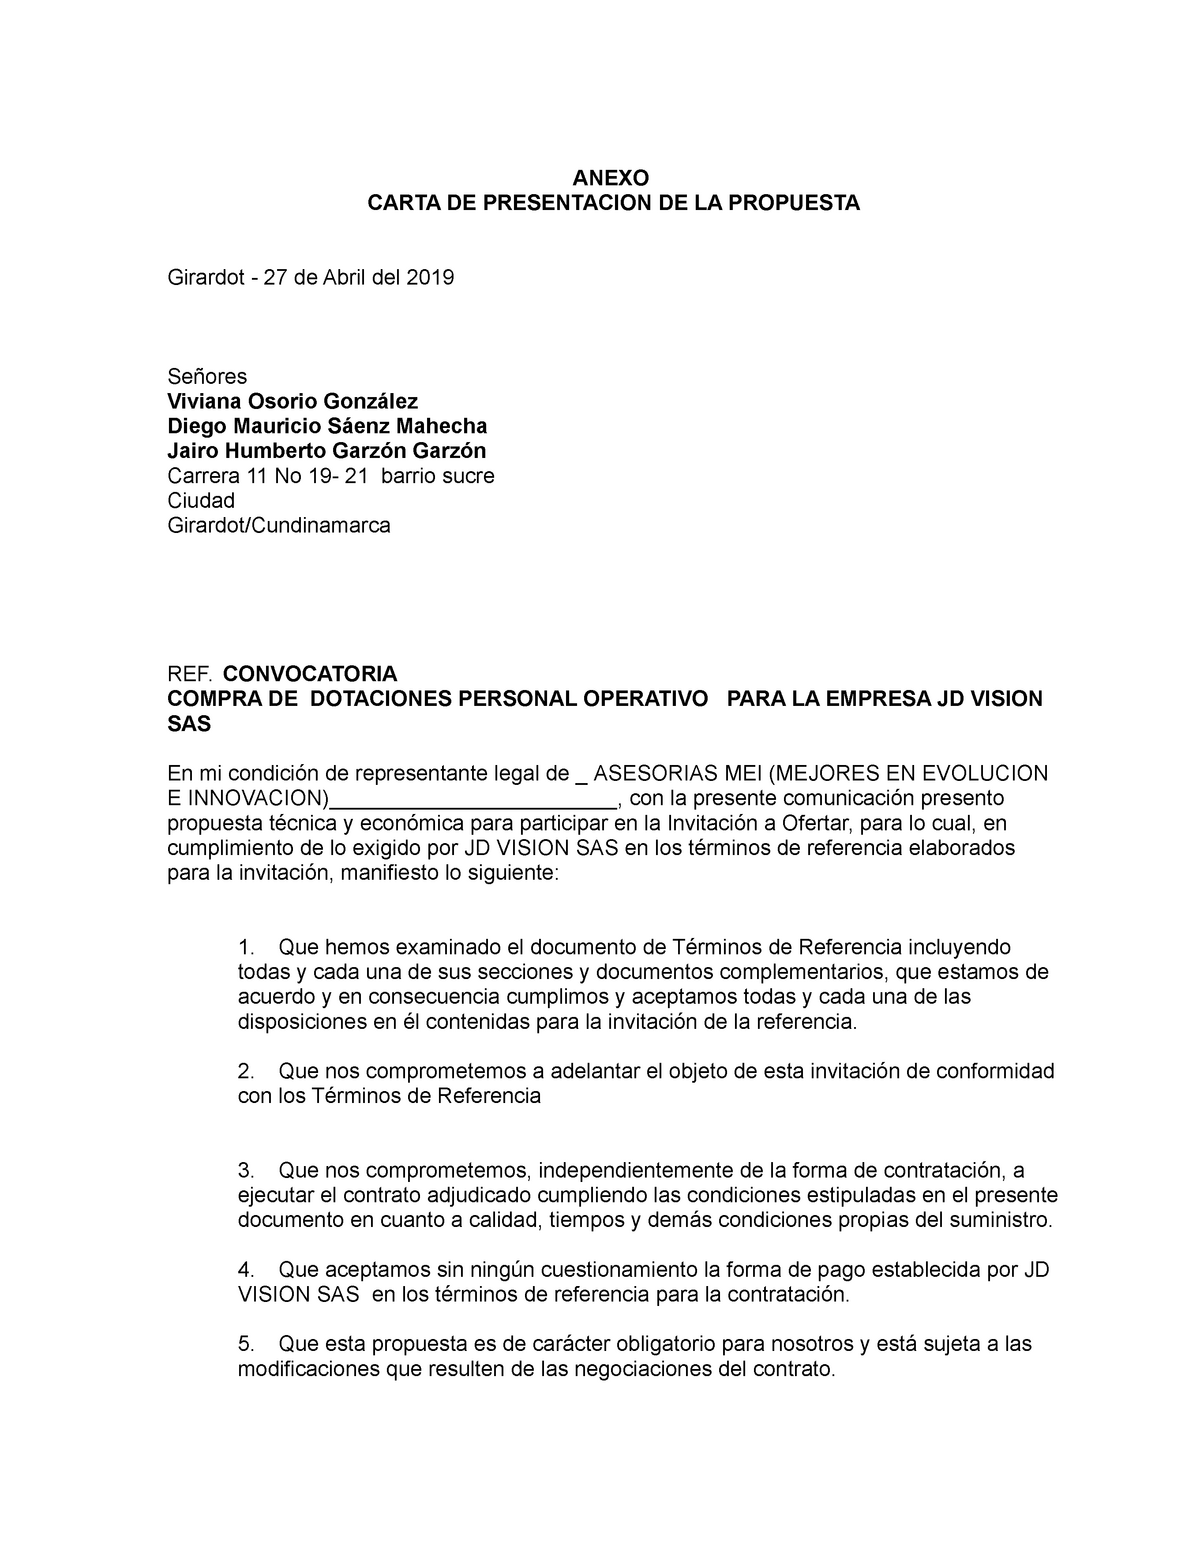 Anexo A - Modelo Carta Presentacion Propuesta - ANEXO CARTA DE PRESENTACION  DE LA PROPUESTA Girardot - Studocu